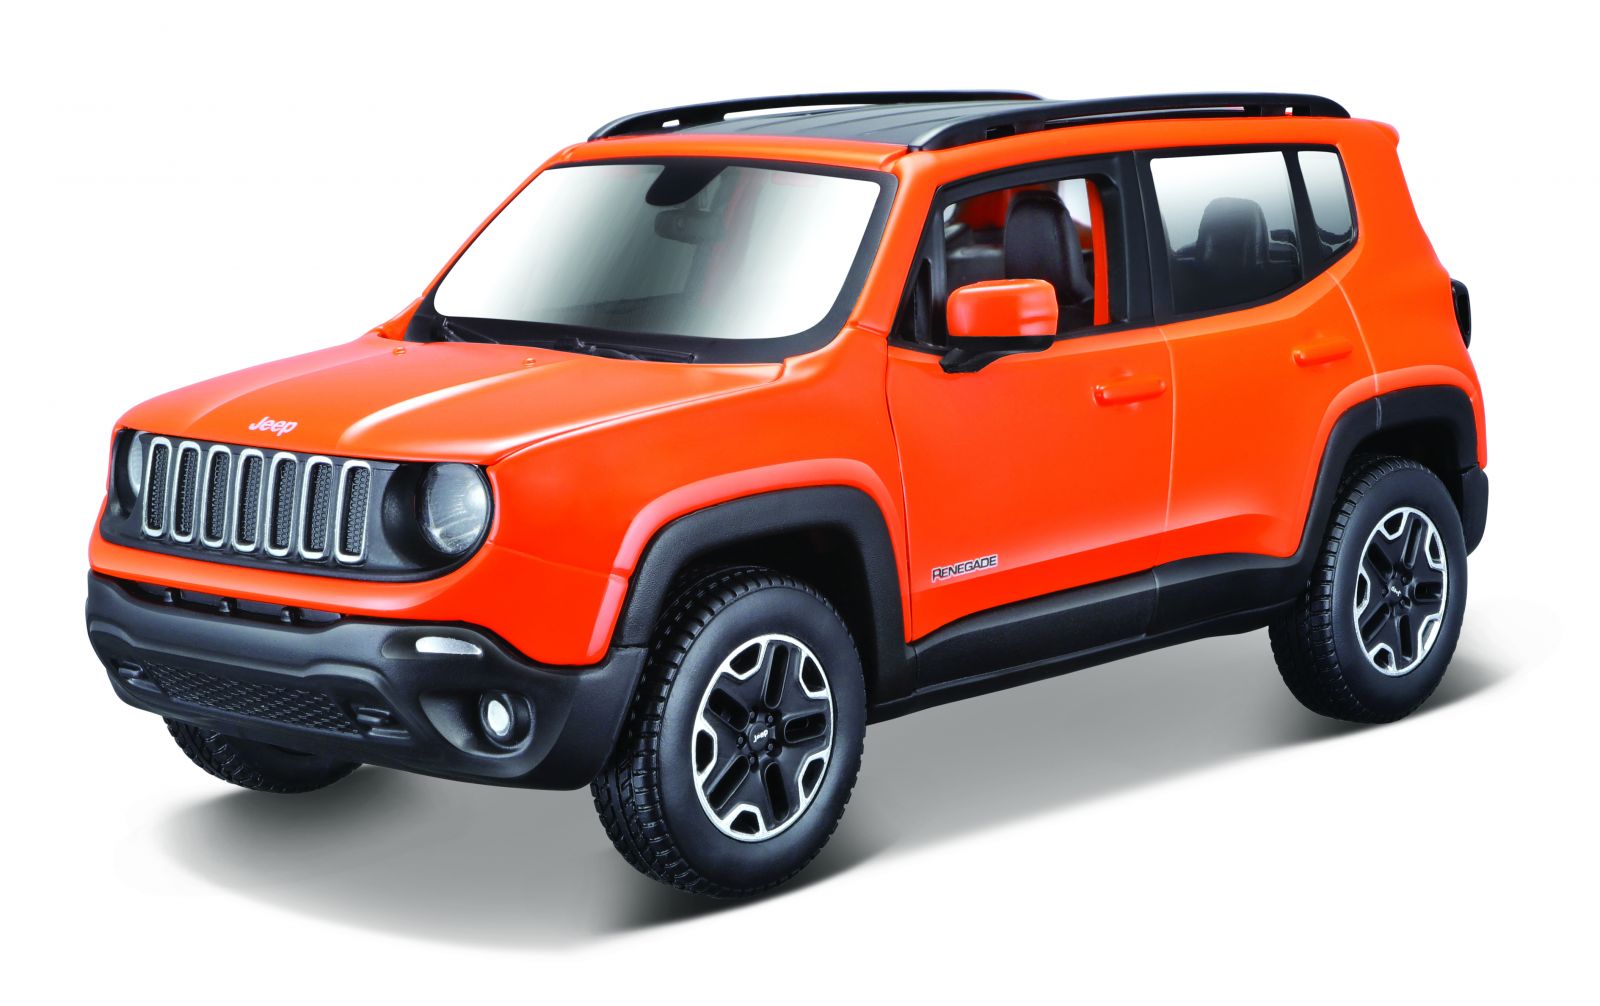 Maisto 1:24 Kit Jeep Renegade - model ke skládání - oranžová barva